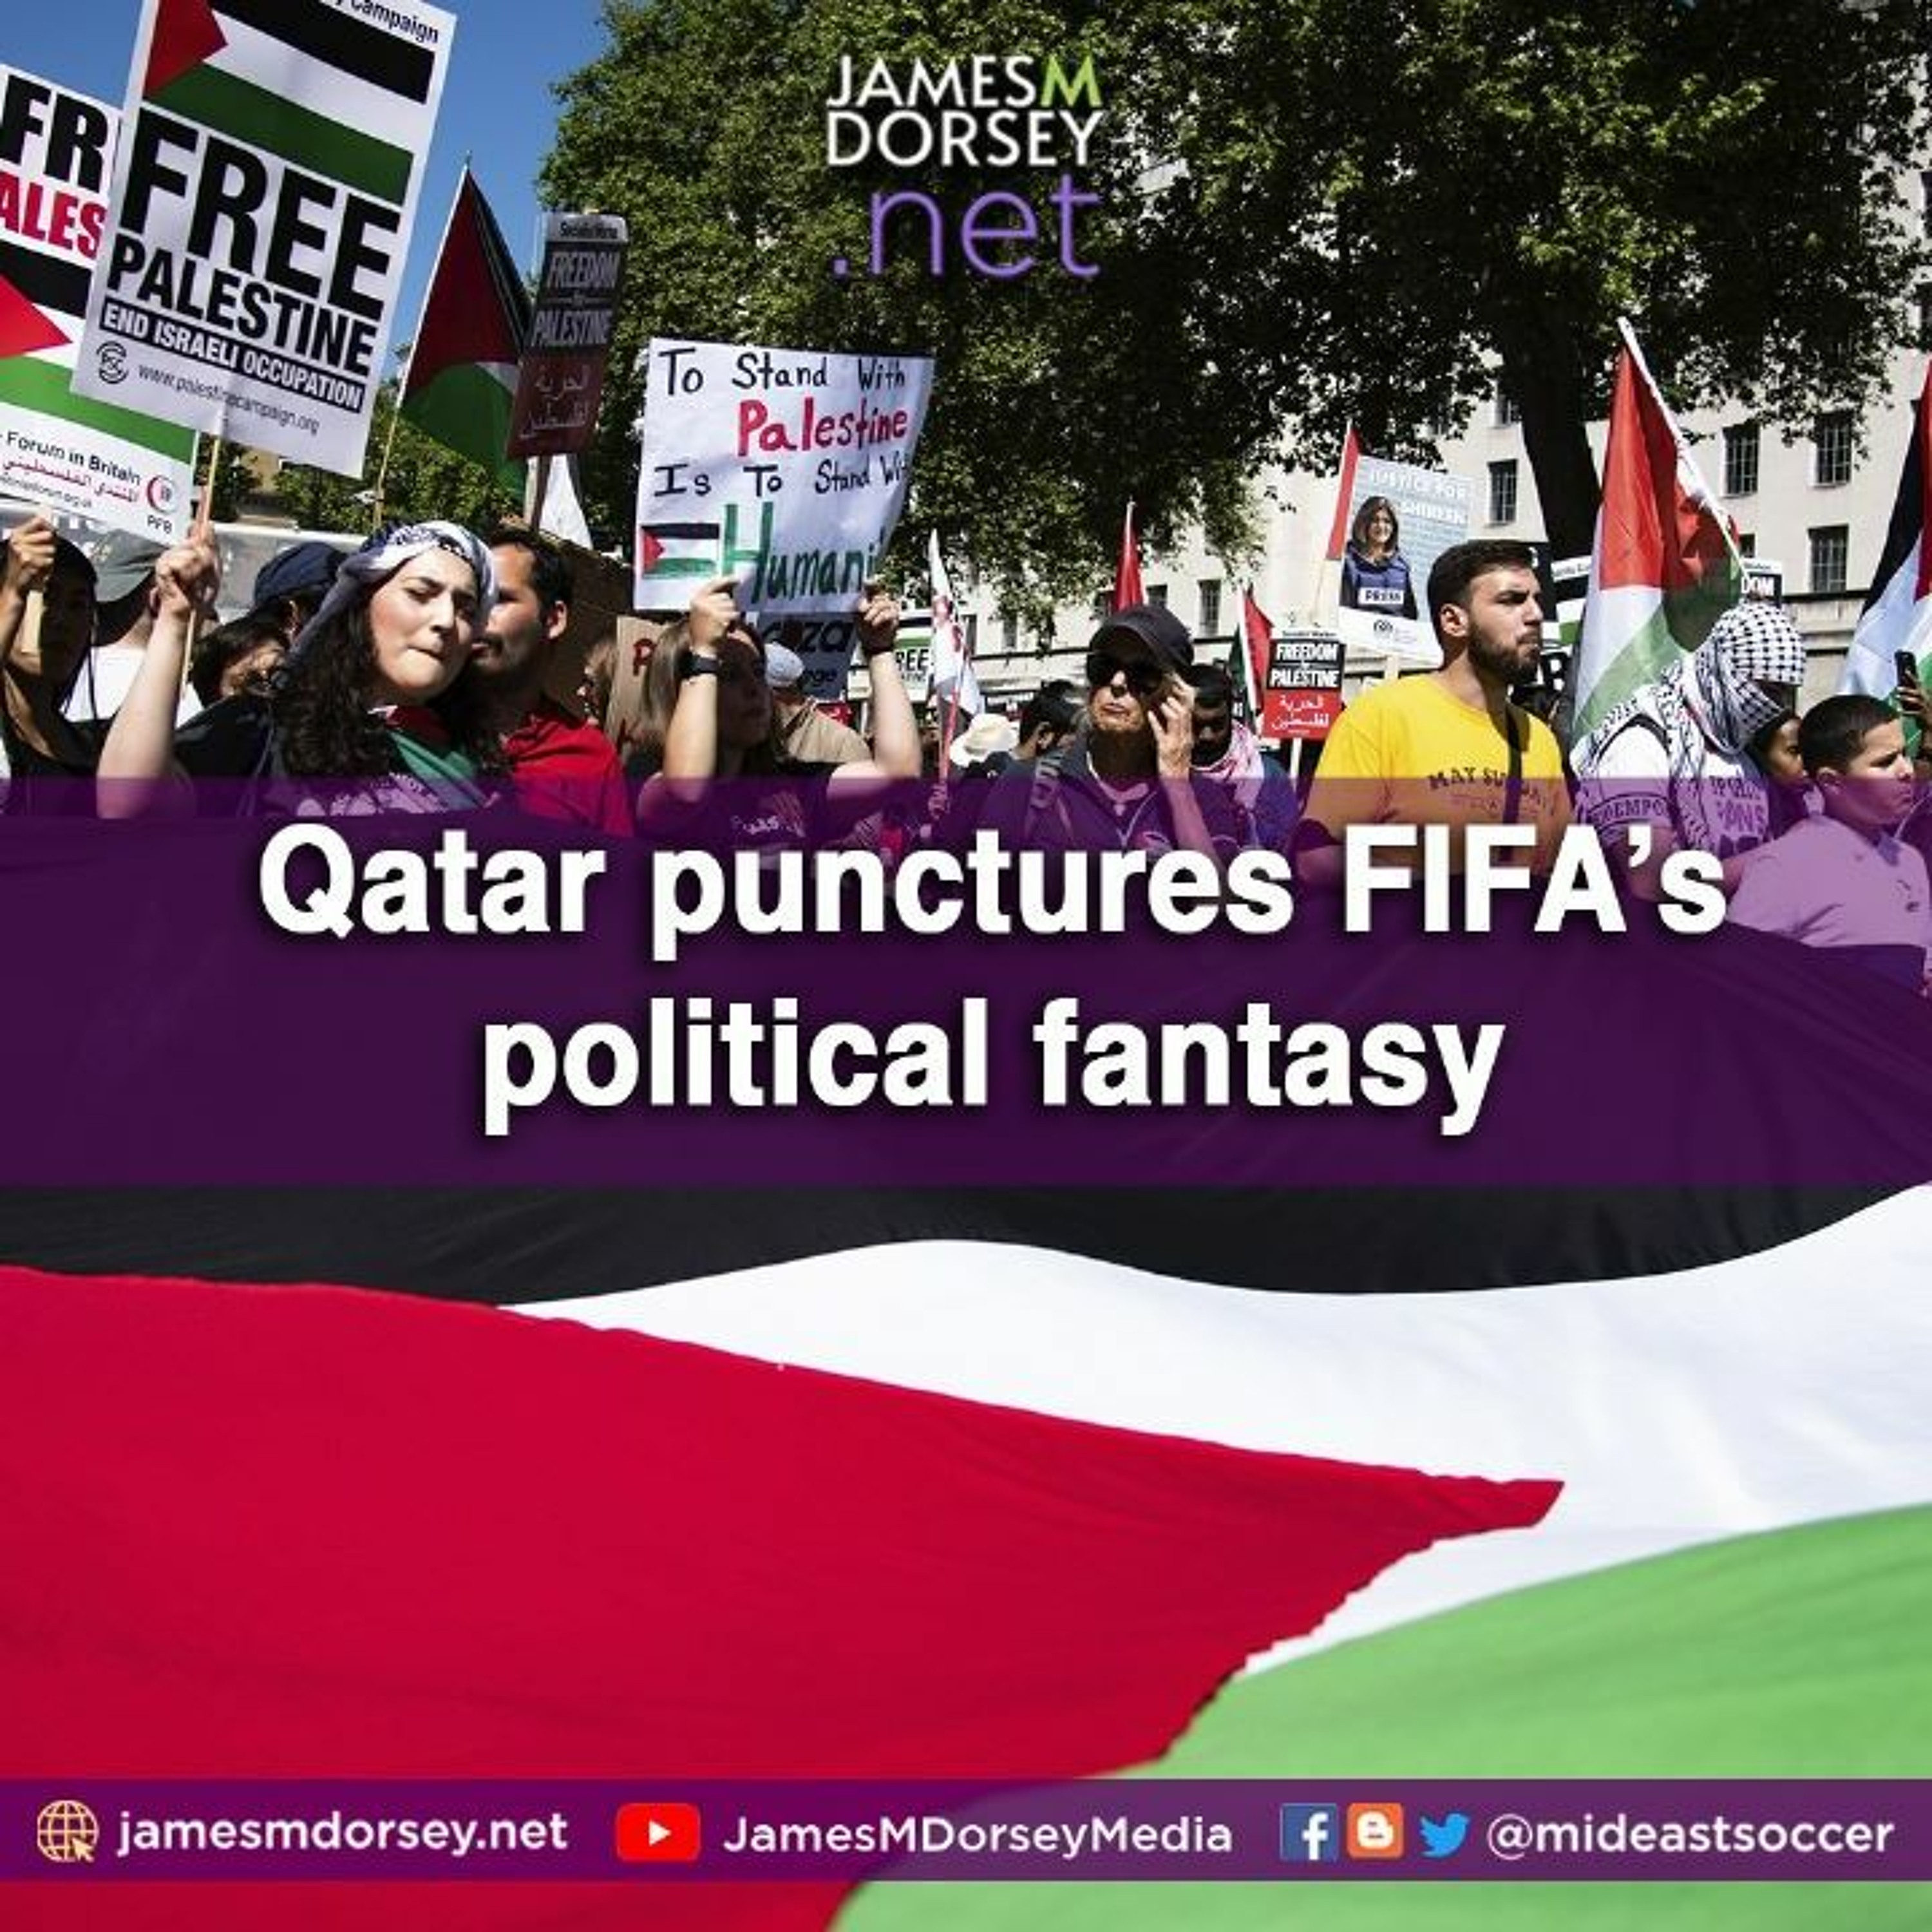 Qatar Punctures FIFA’s Political Fantasy